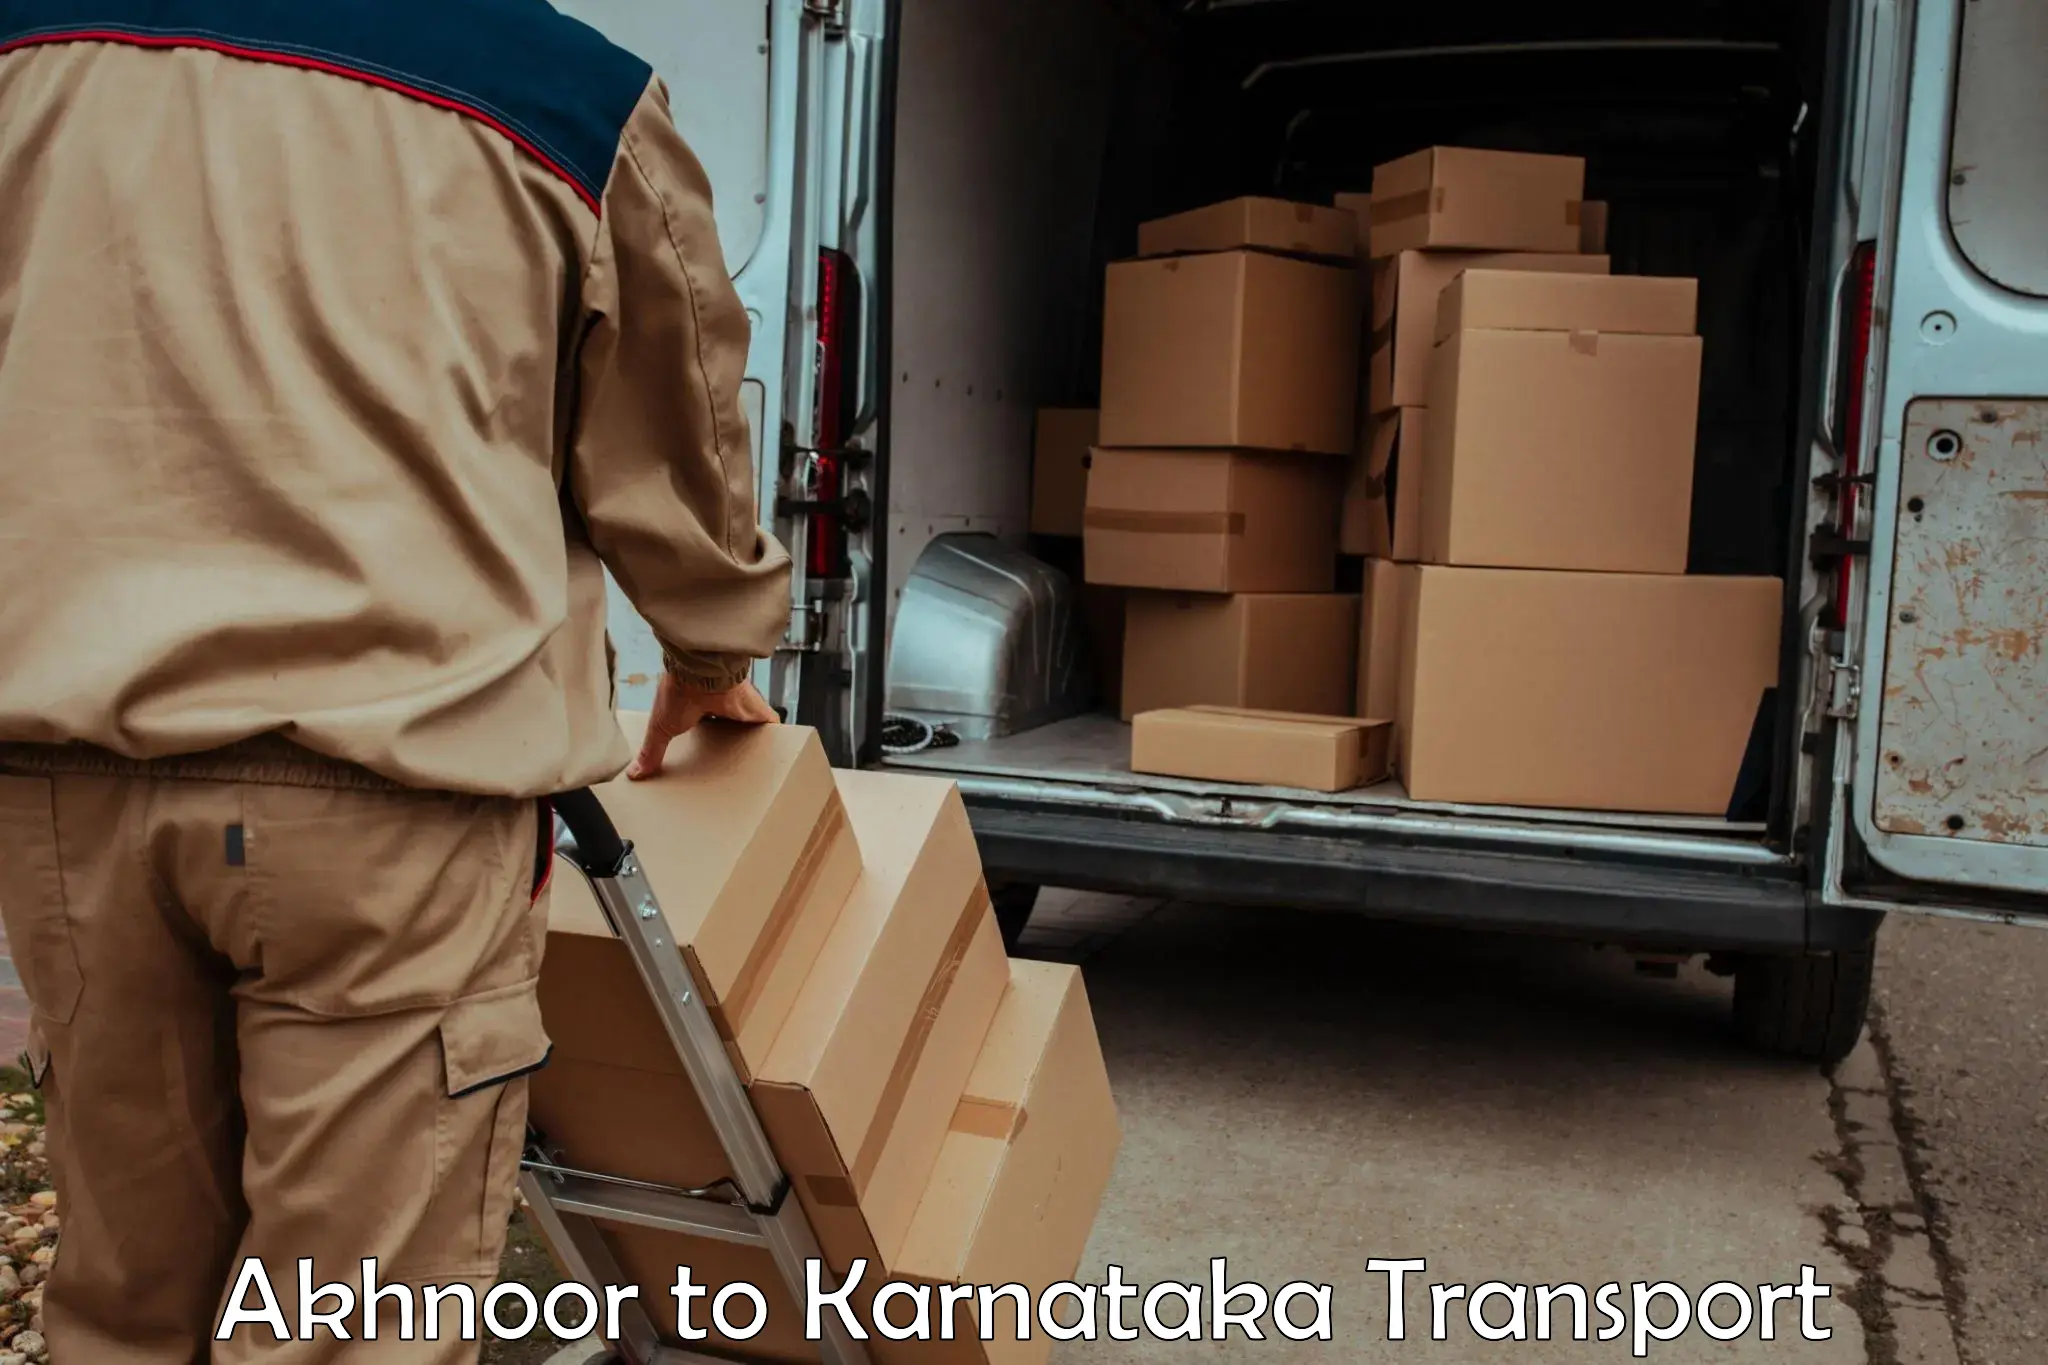 Shipping services Akhnoor to Channarayapatna